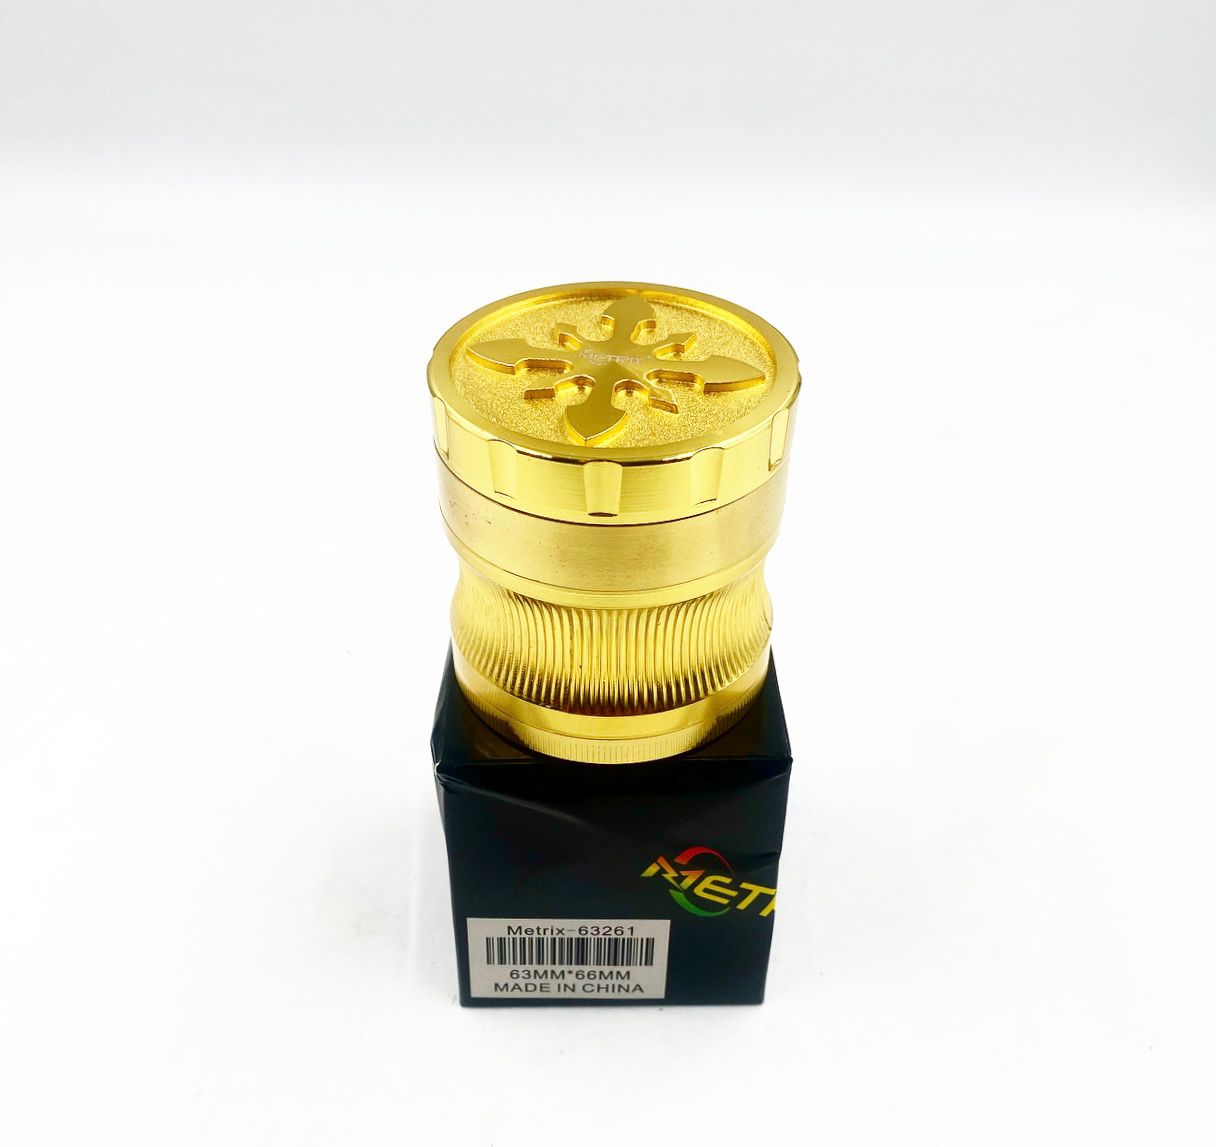 Metrix 63261 Yellow Gold Grinder